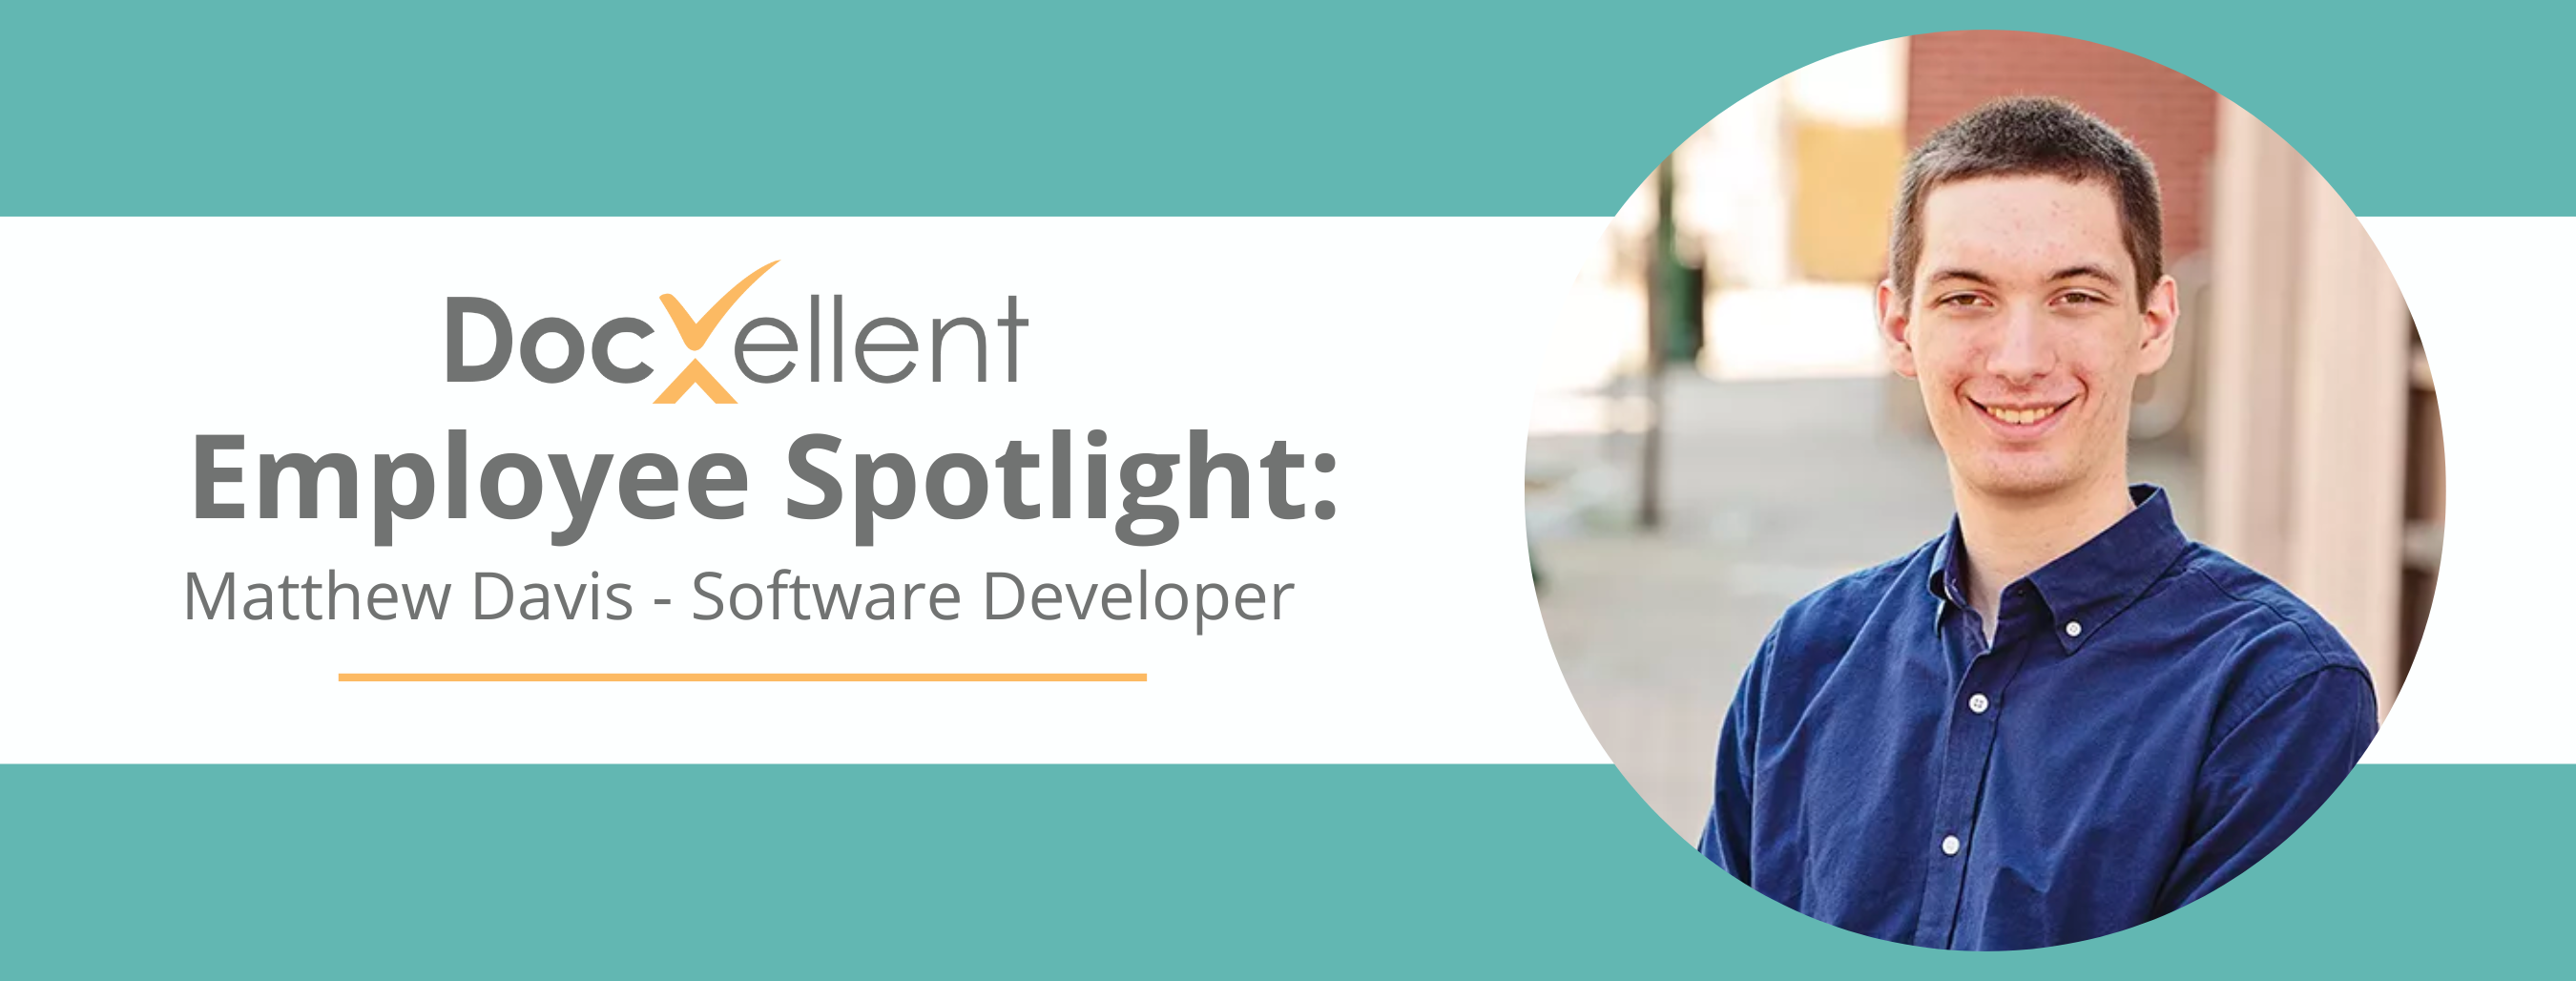 Employee Spotlight: Matt Davis | DocXellent Software Development